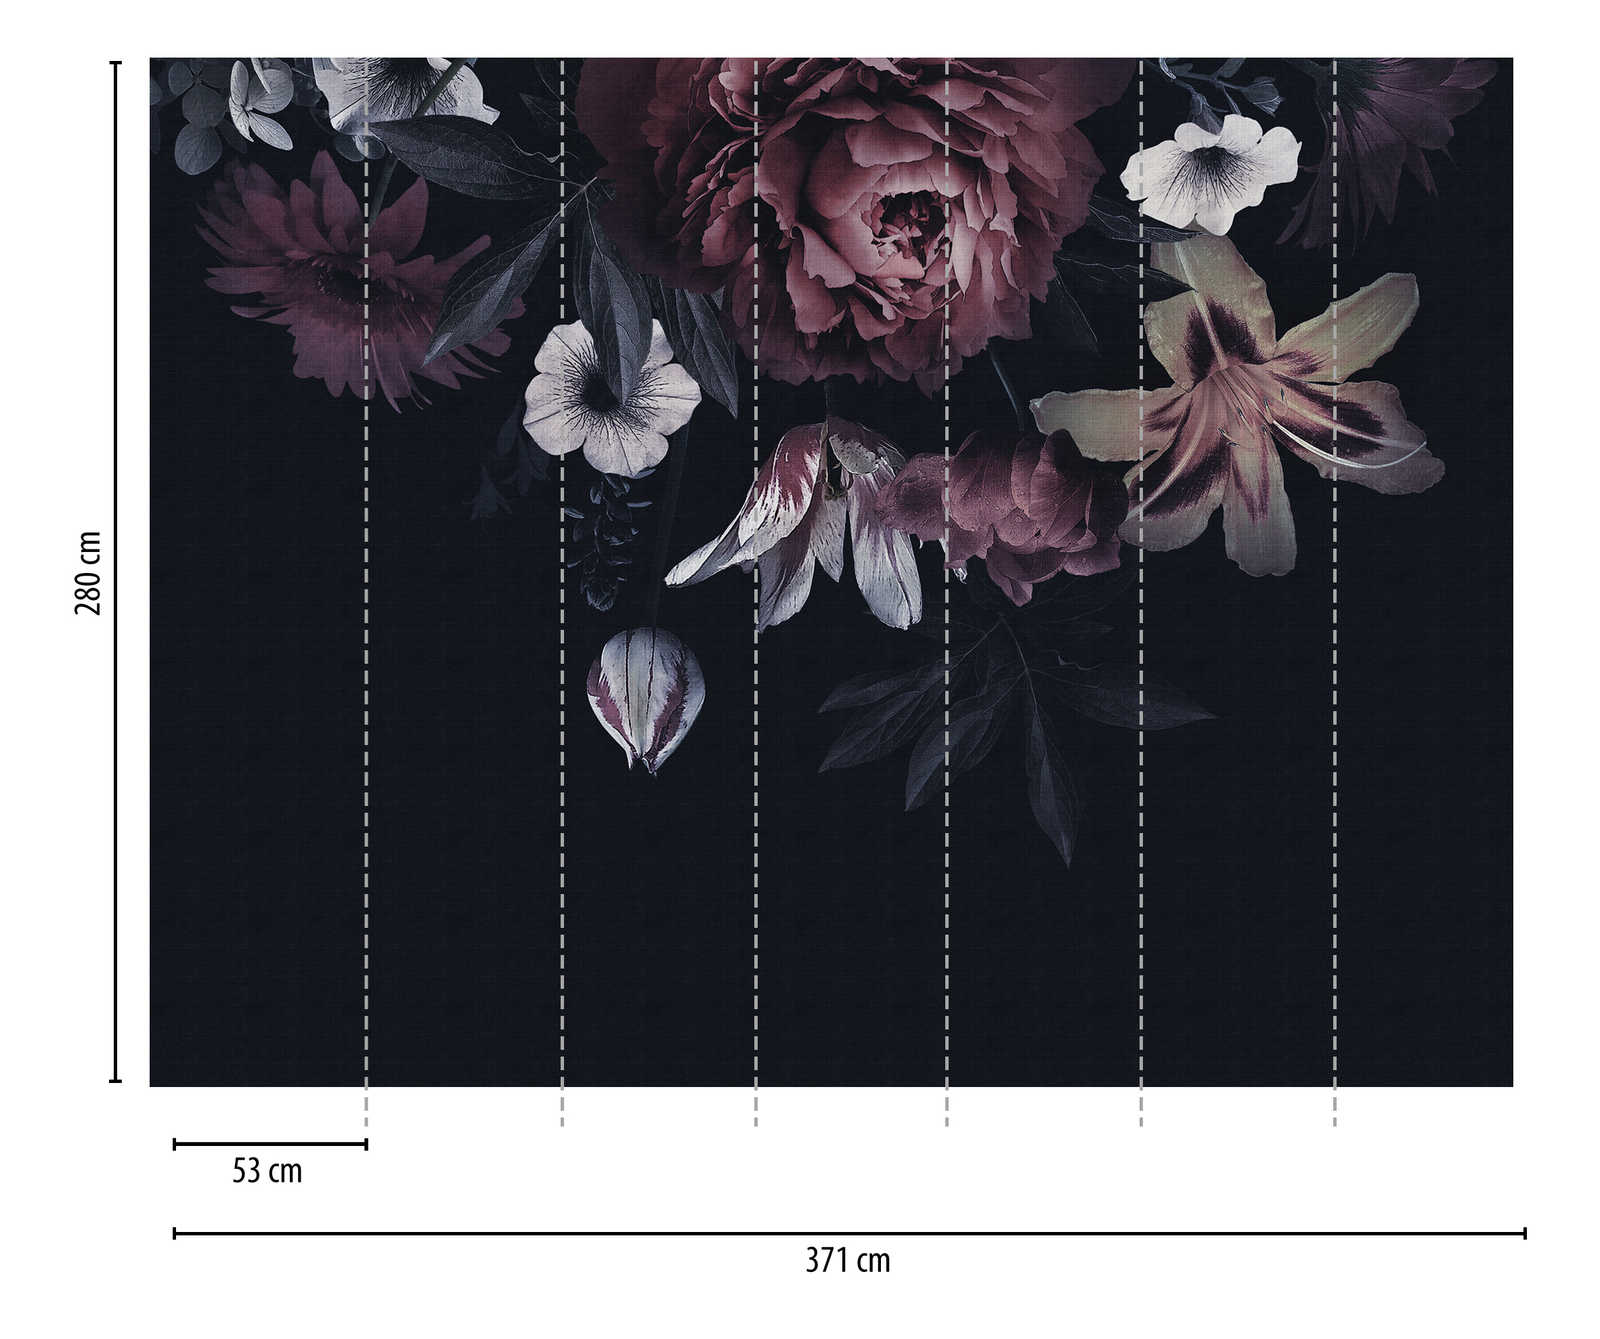             behang nieuwigheid | donker motief behang bloemen in schilderstijl
        